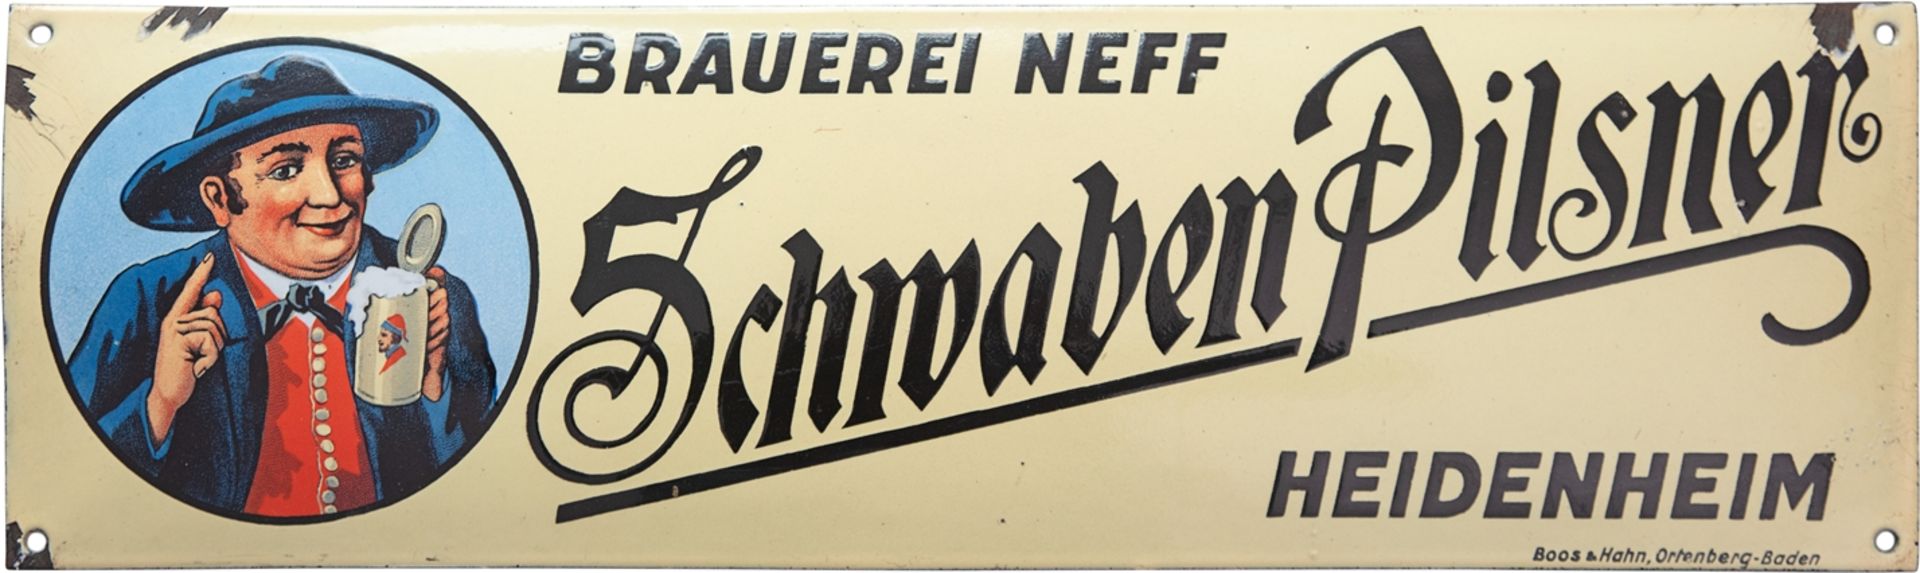 Enamel sign for the Neff brewery, Schwaben Pilsner, Heidenheim, around 1920